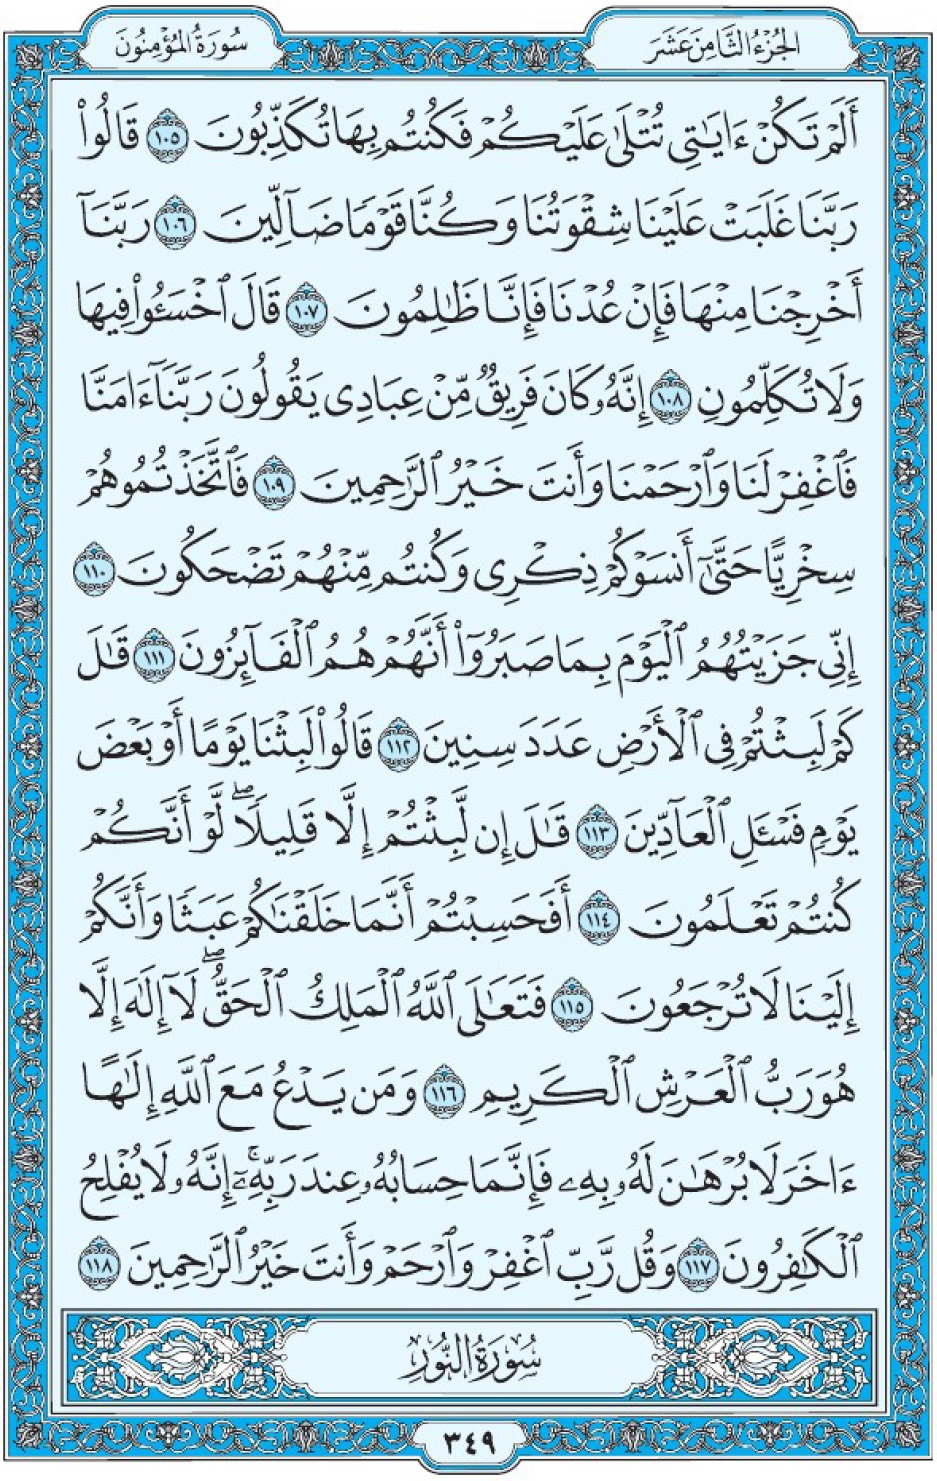 Коран Мединский мусхаф страница 349, Аль-Муъминун, аят 105-118